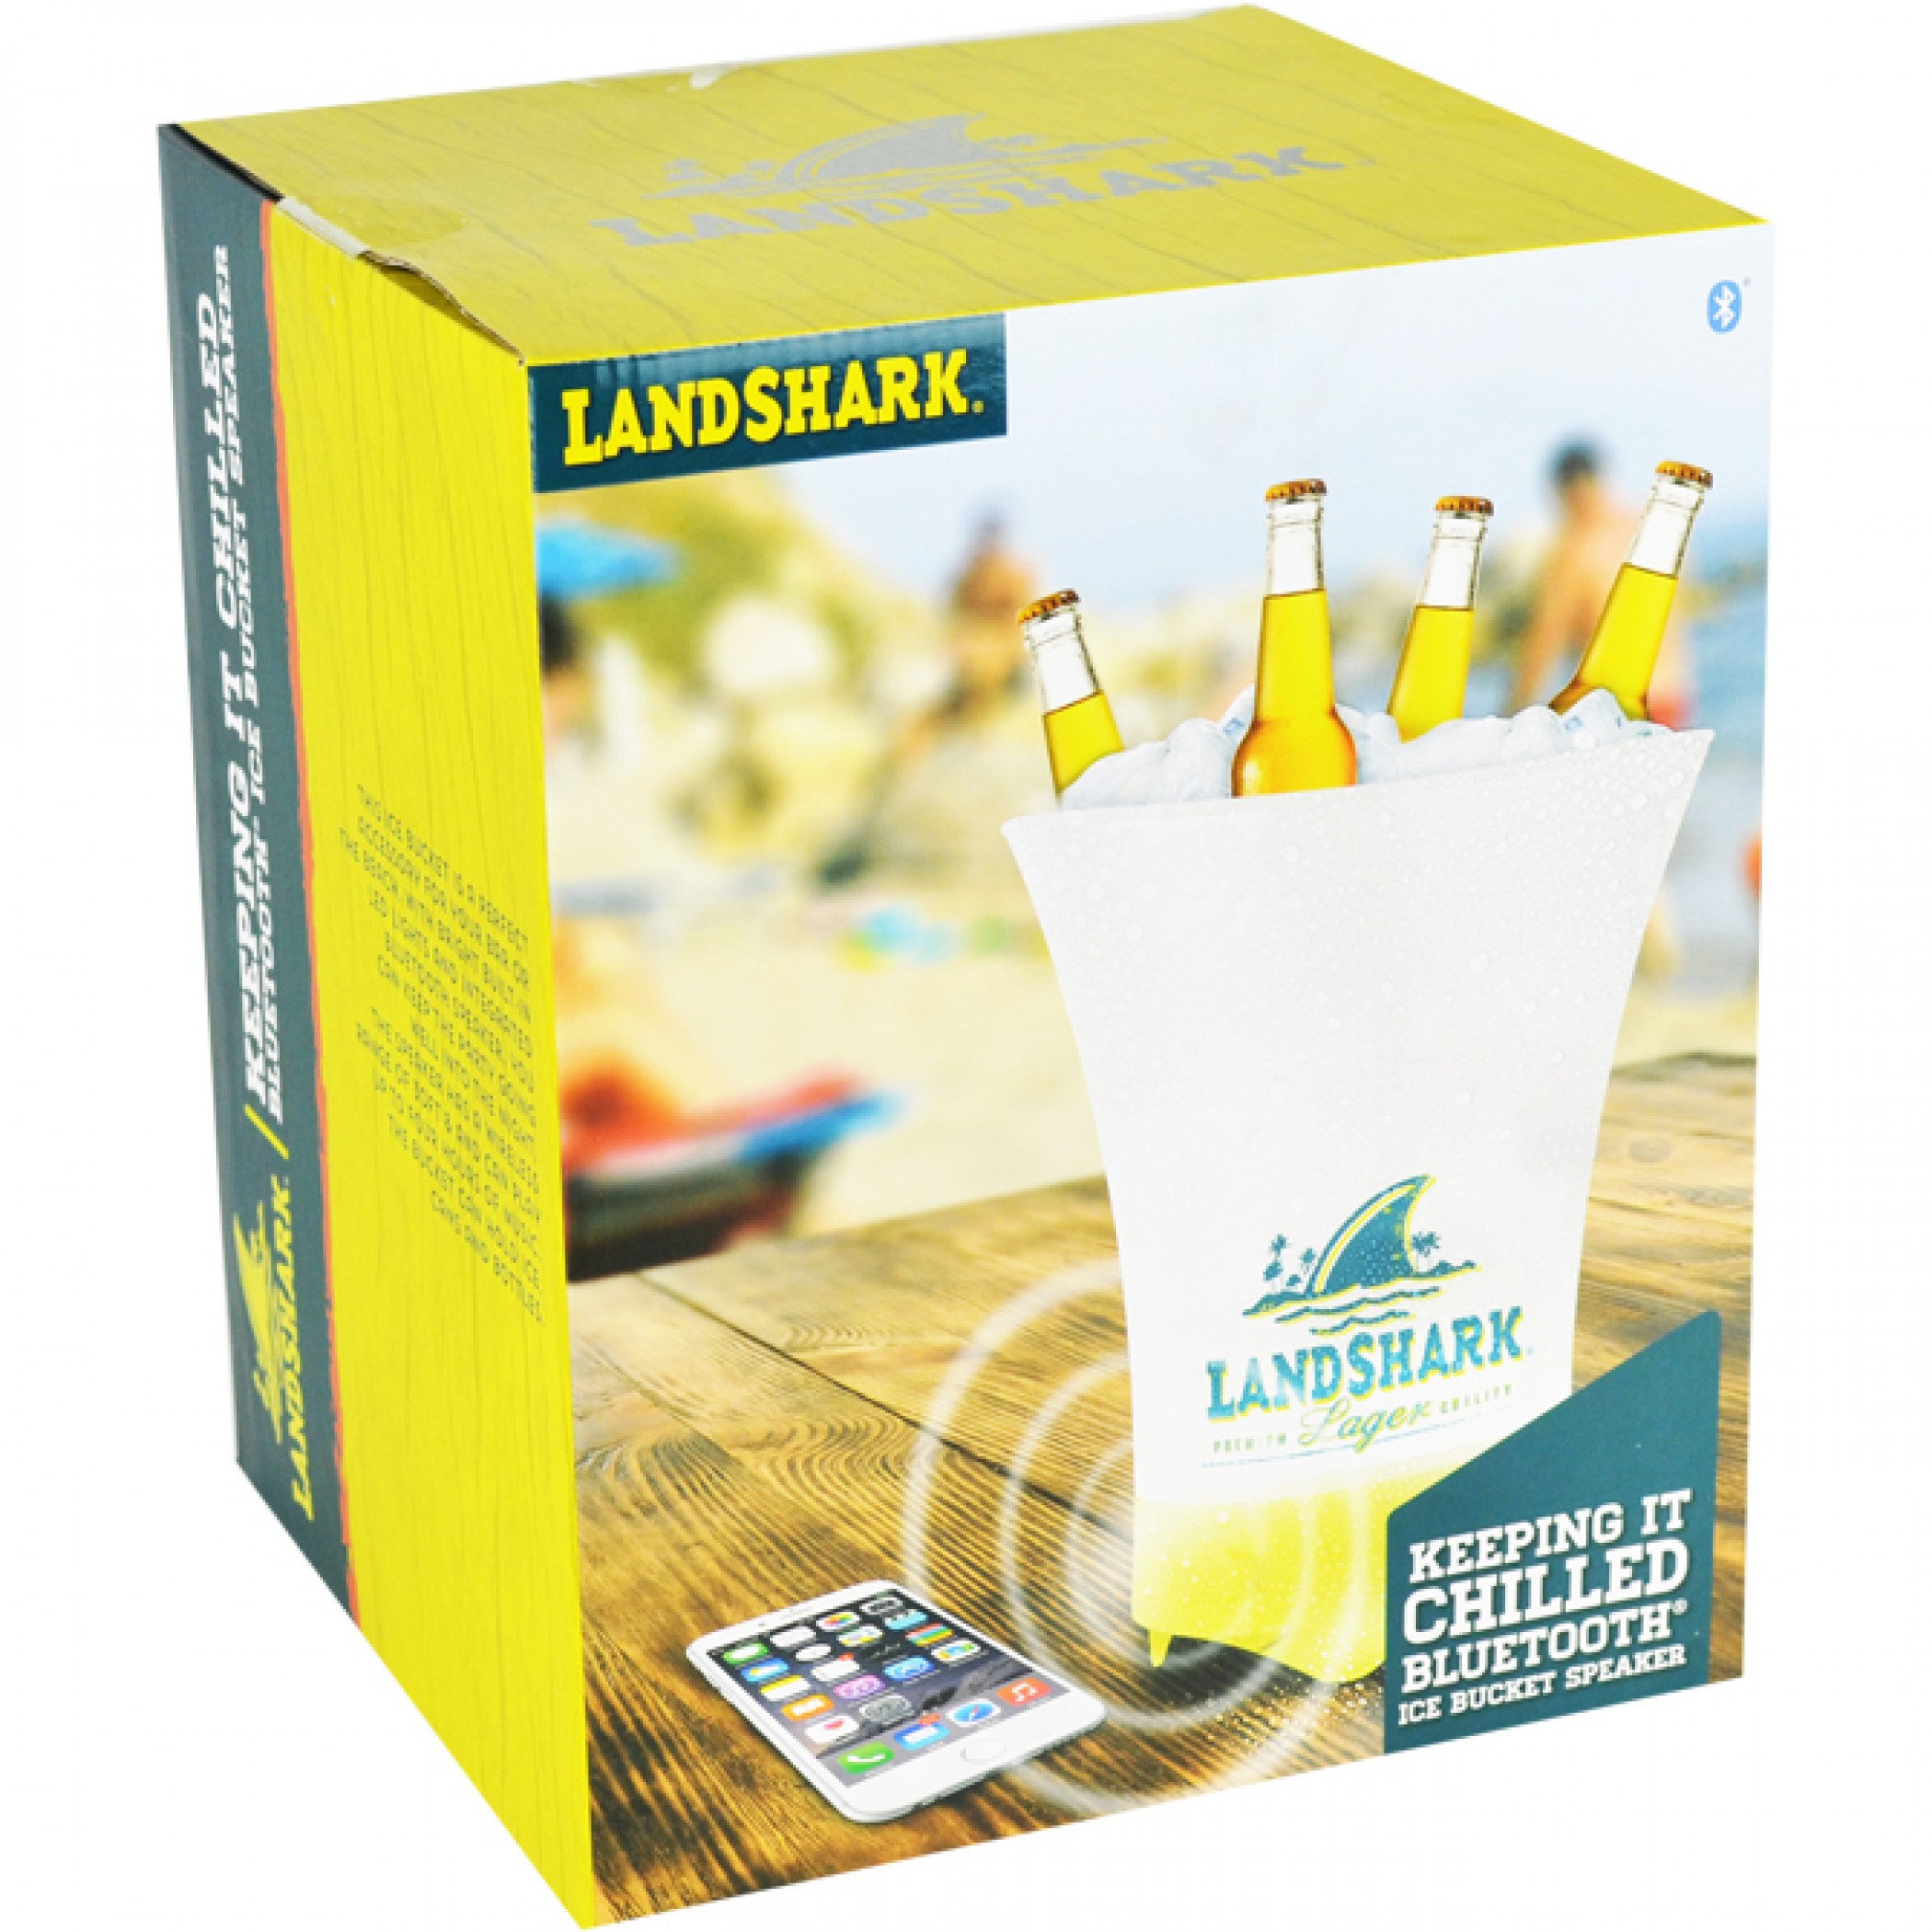 LandShark Beer Bucket with Bluetooth Speakers